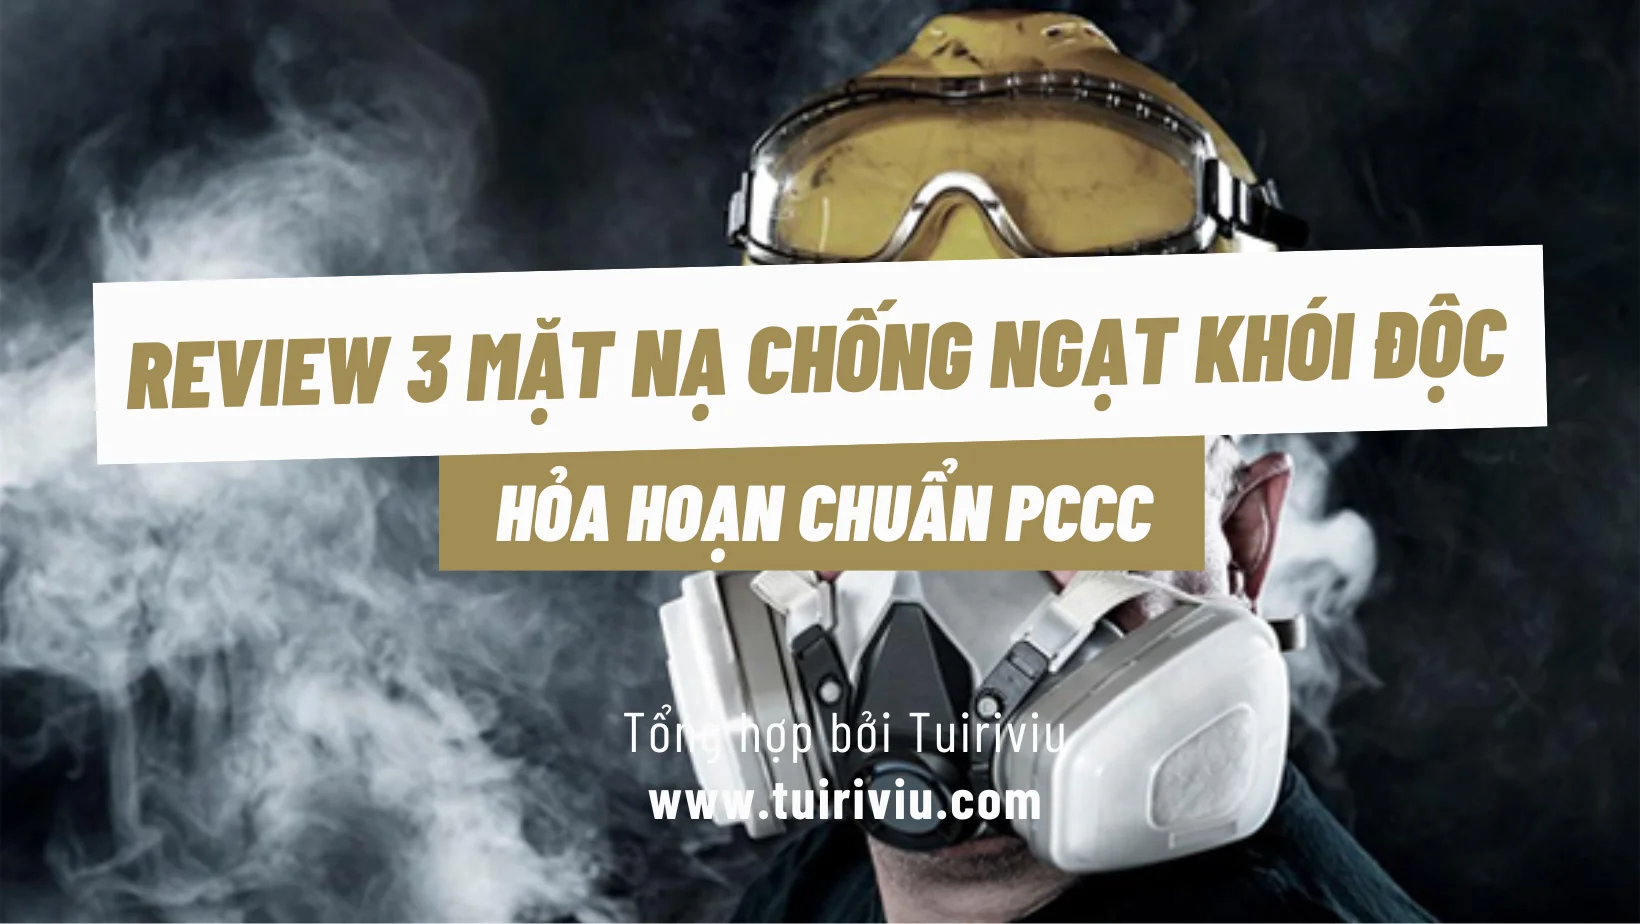 Review 3 mặt nạ chống ngạt khói độc hỏa hoạn chuẩn PCCC